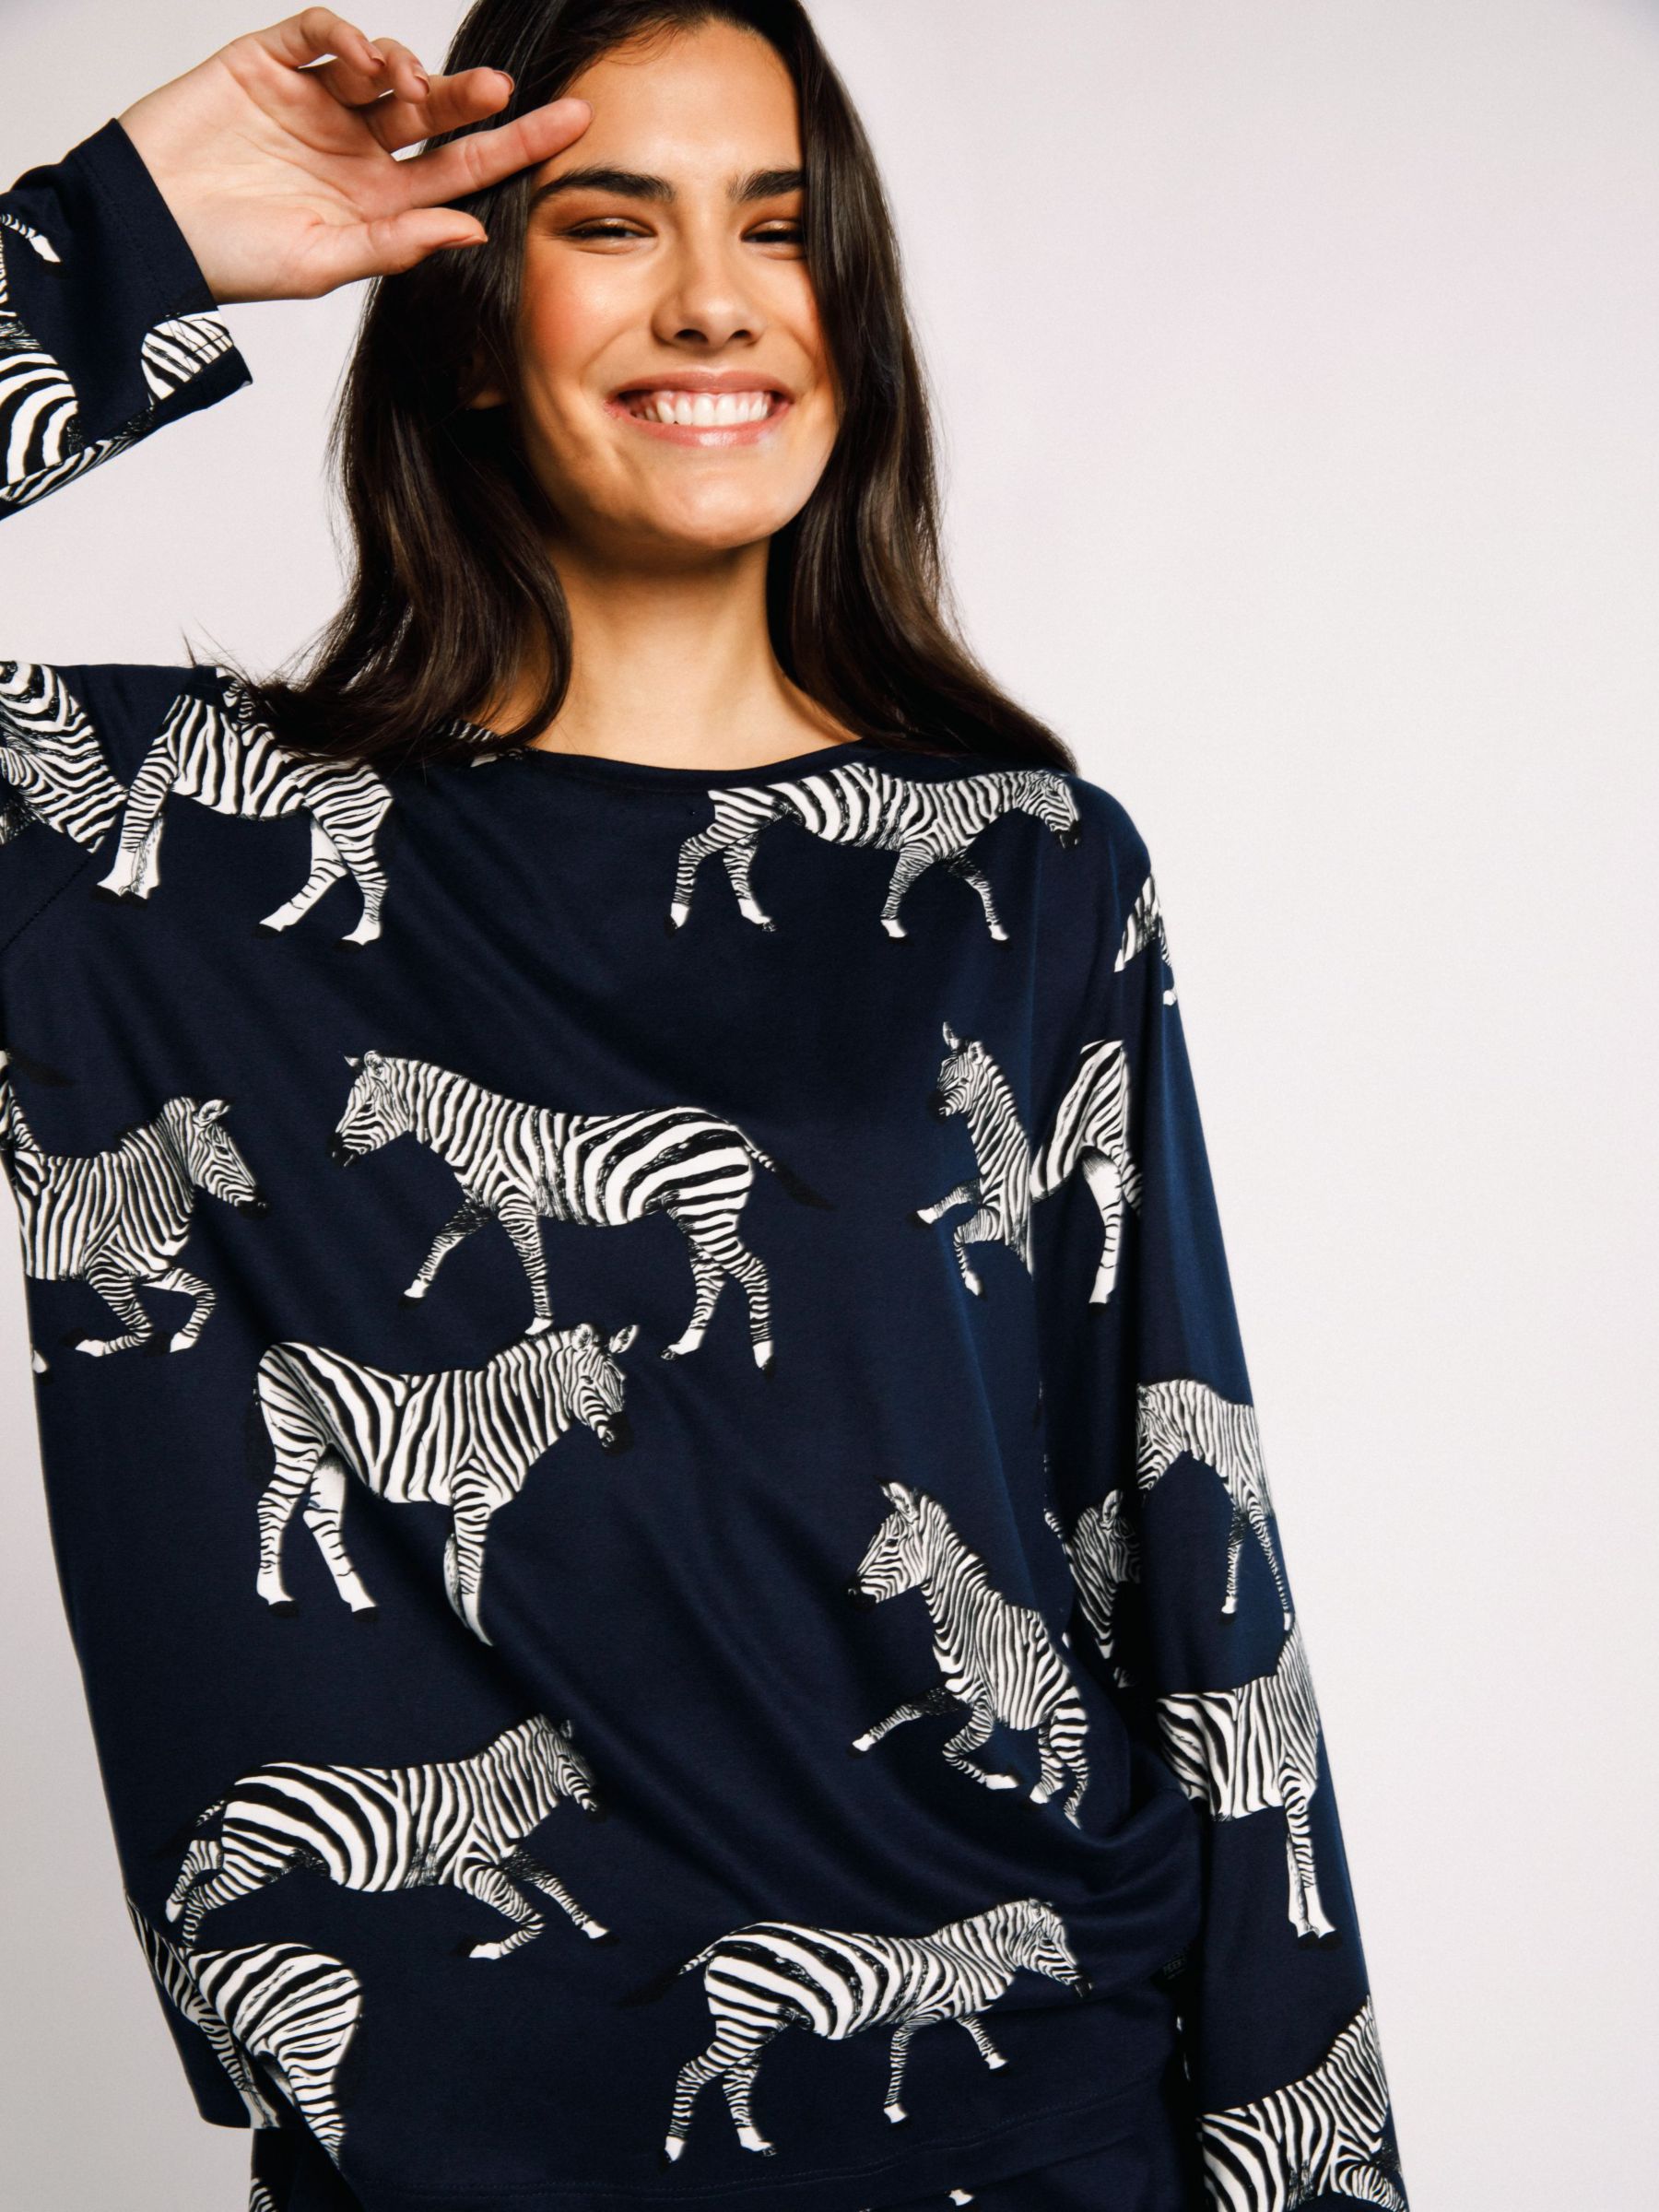 Buy Chelsea Peers Zebra Print Recycled Pyjama Set Online at johnlewis.com